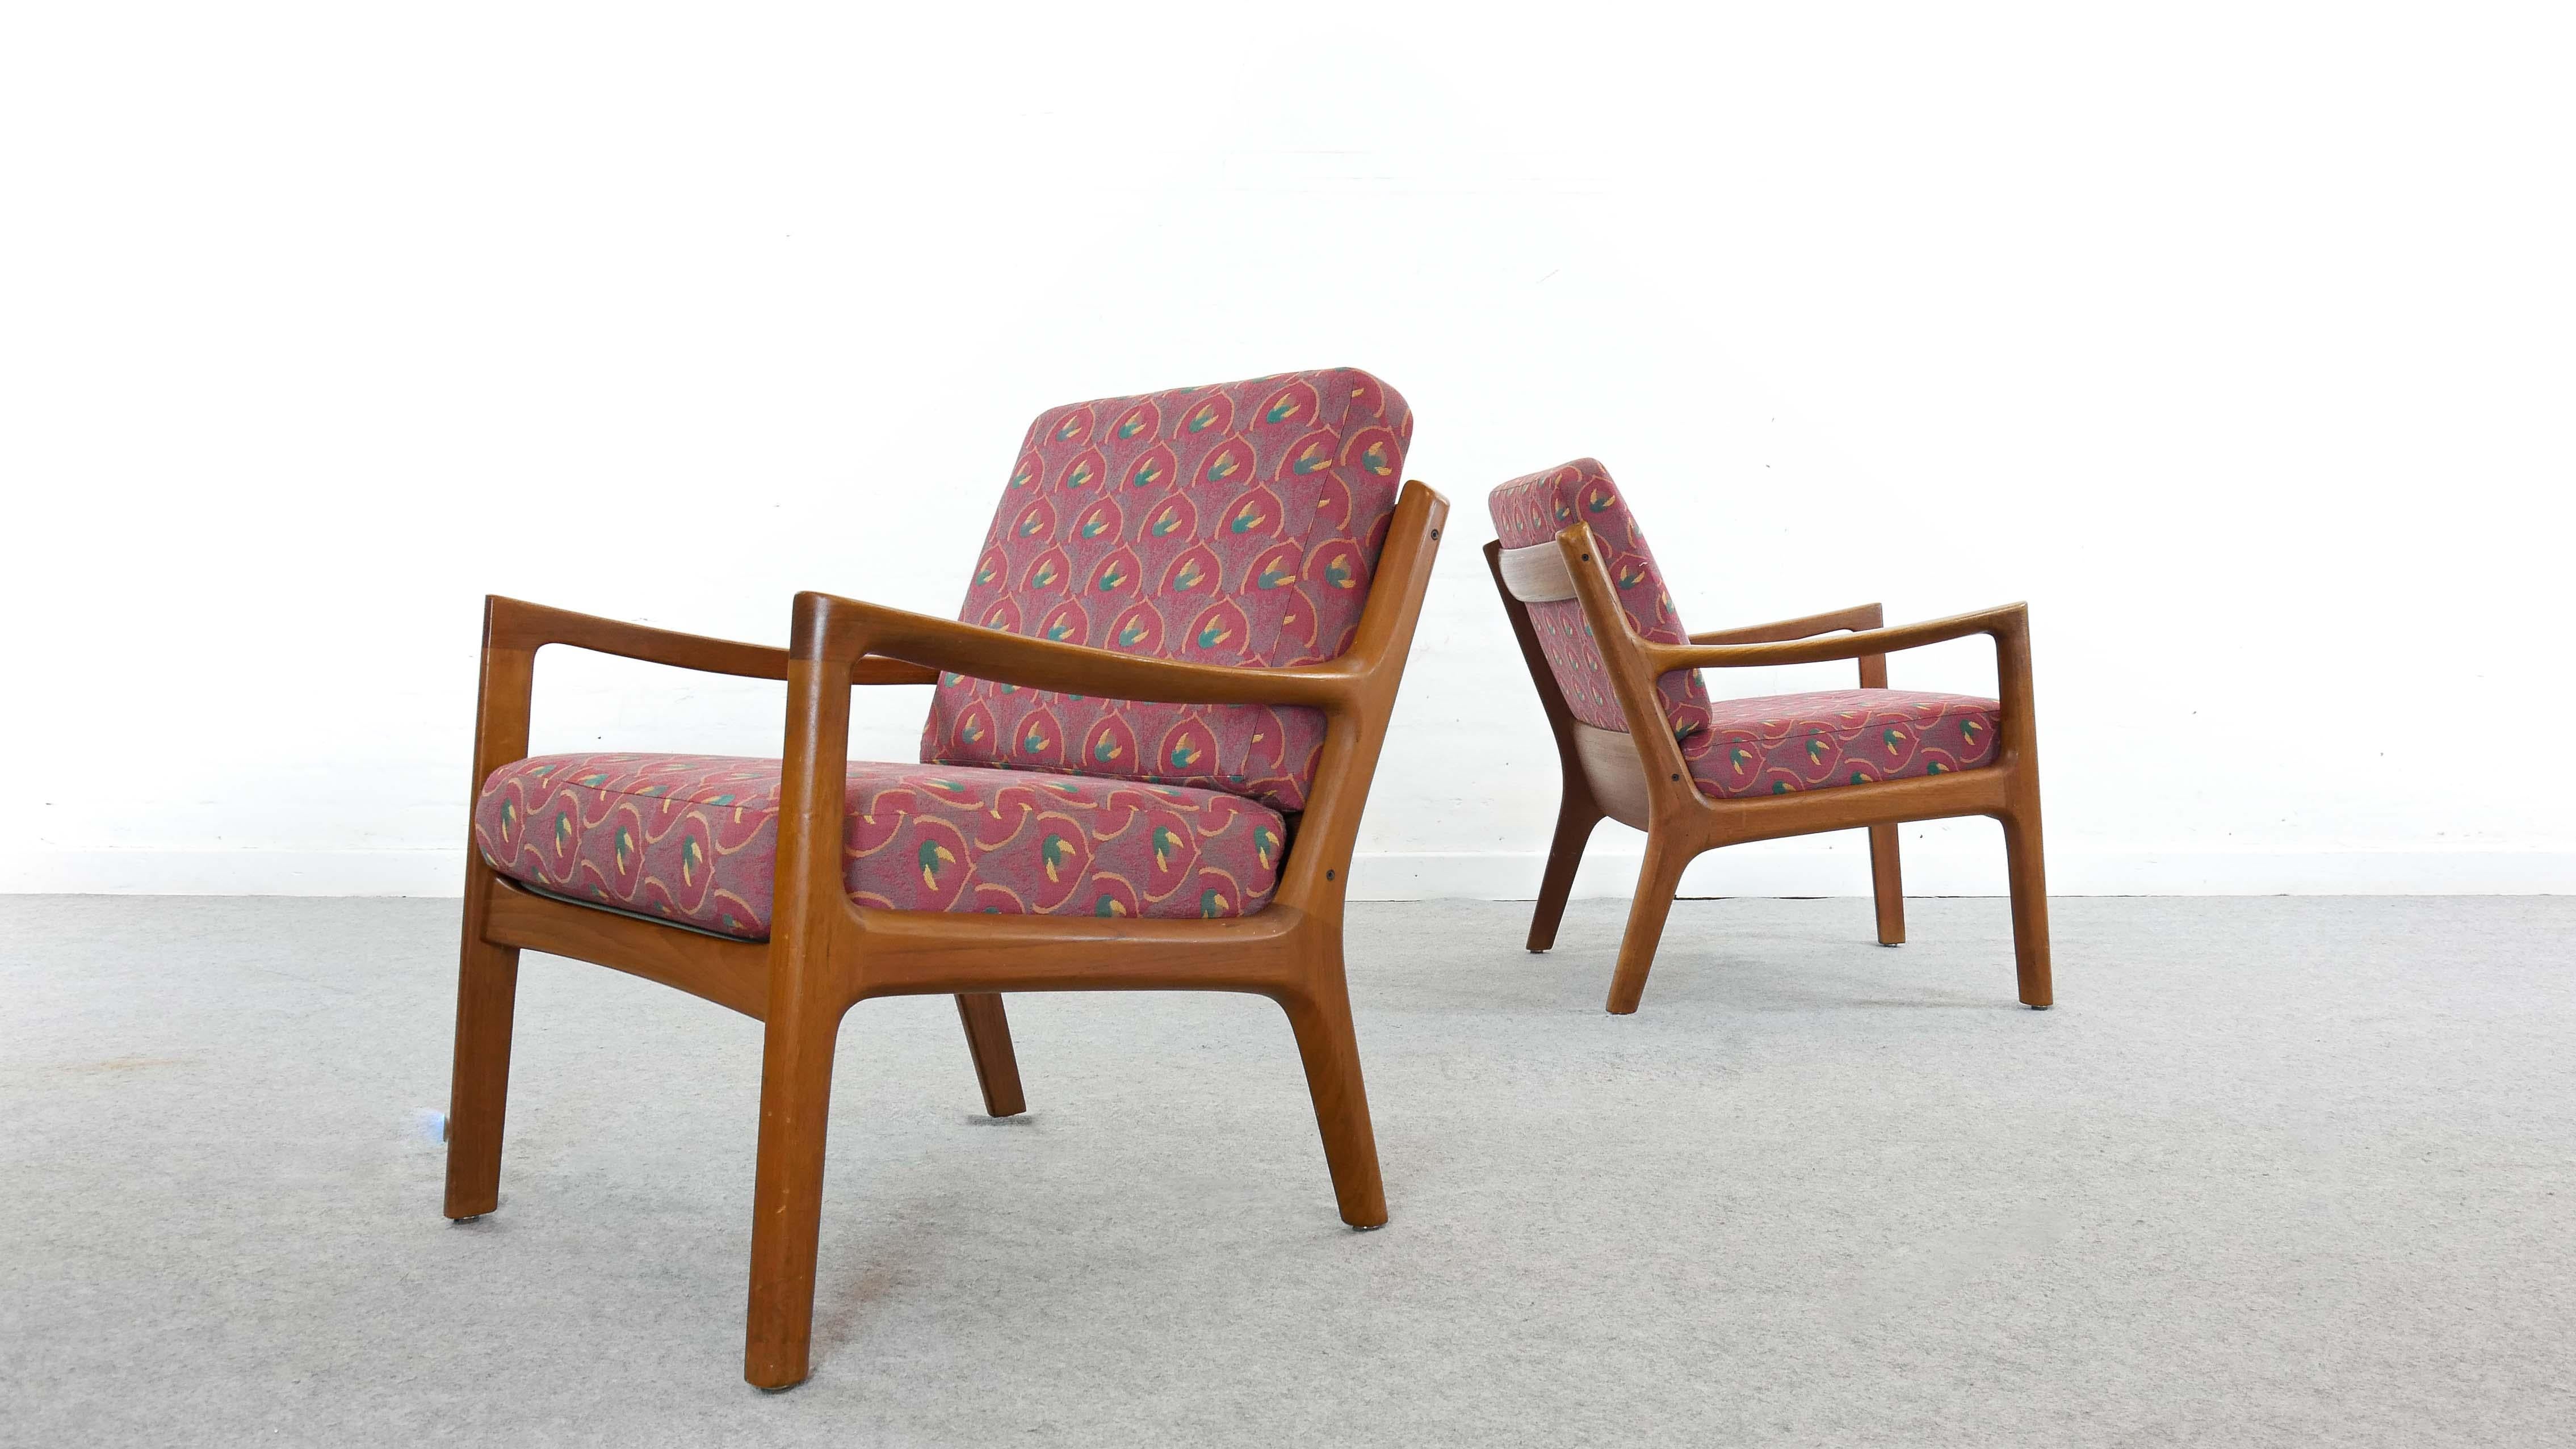 Satz von zwei skandinavischen Senator-Sesseln aus Teakholz, entworfen von Ole Wanscher und hergestellt von France and Son, Dänemark. Die Kissen wurden mit Stoffen von JAB Anstötz neu gepolstert.
Herstelleretikett darunter.

  